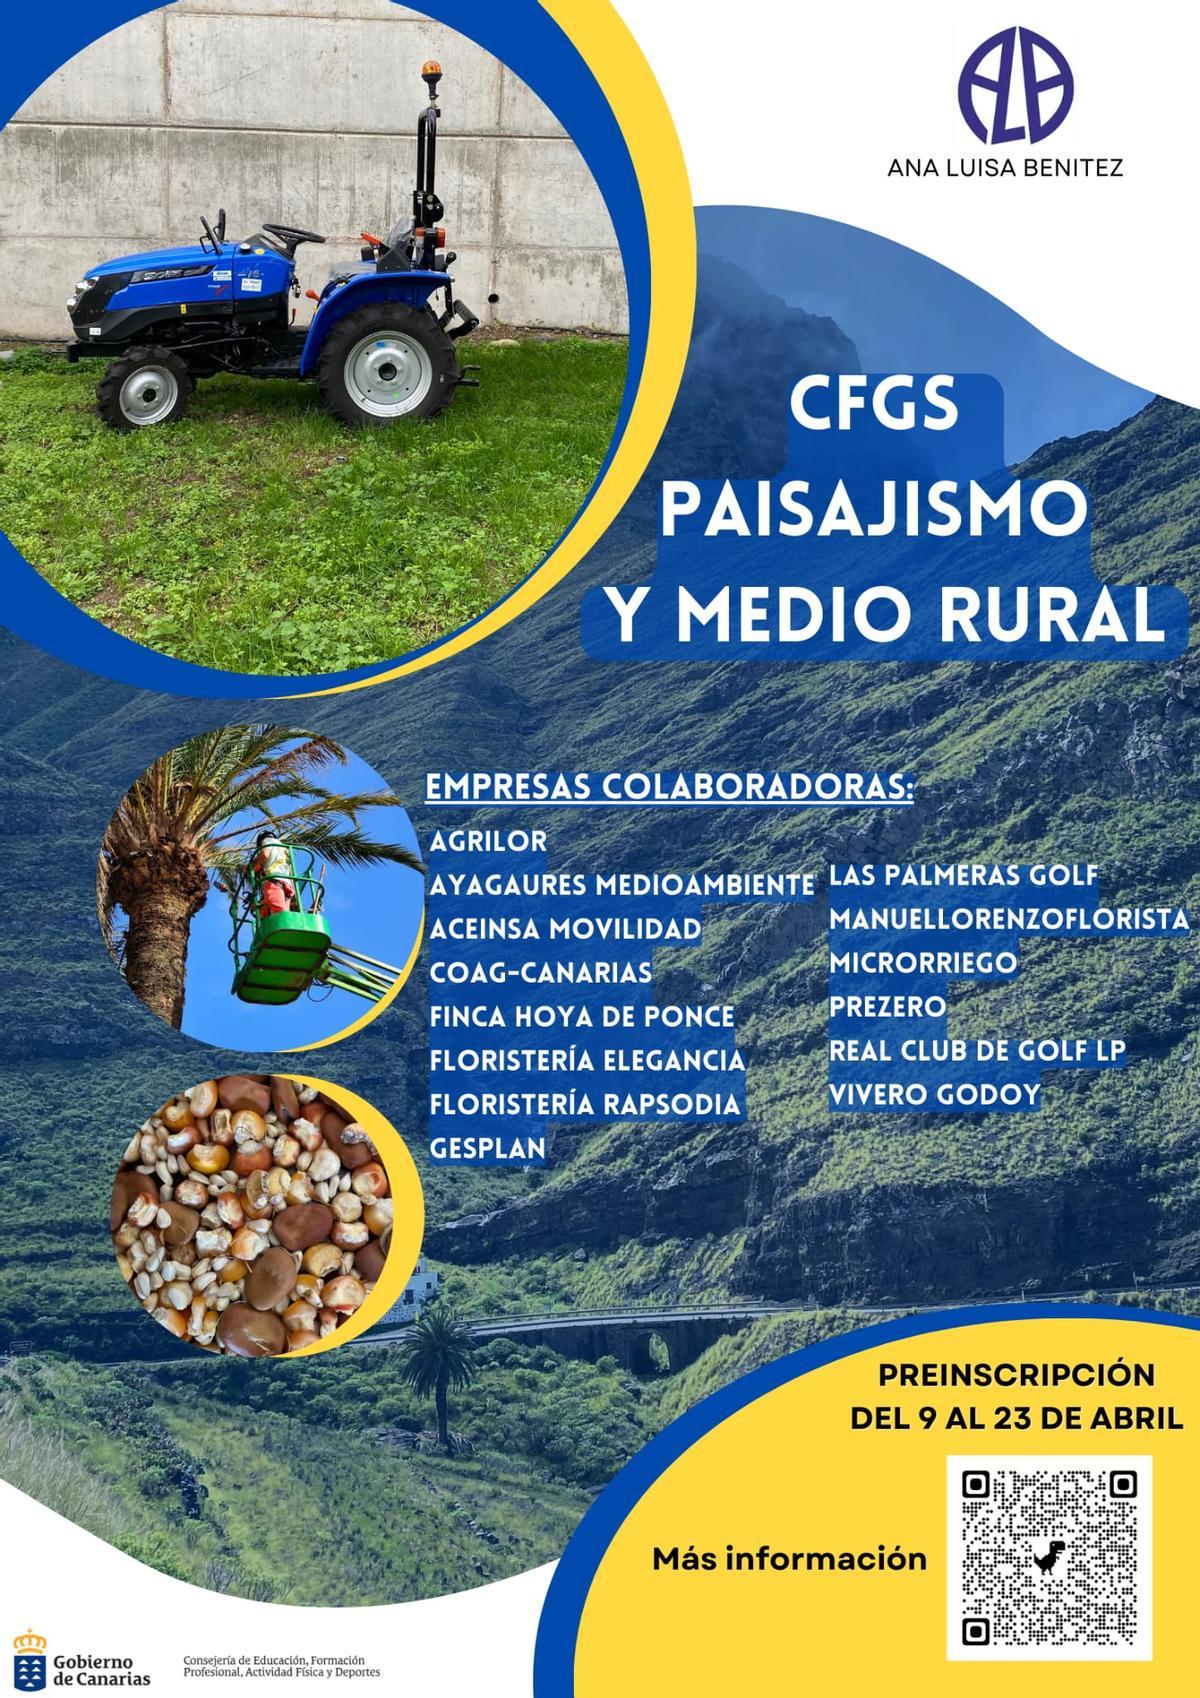 CFGS Paisajismo y medio rural